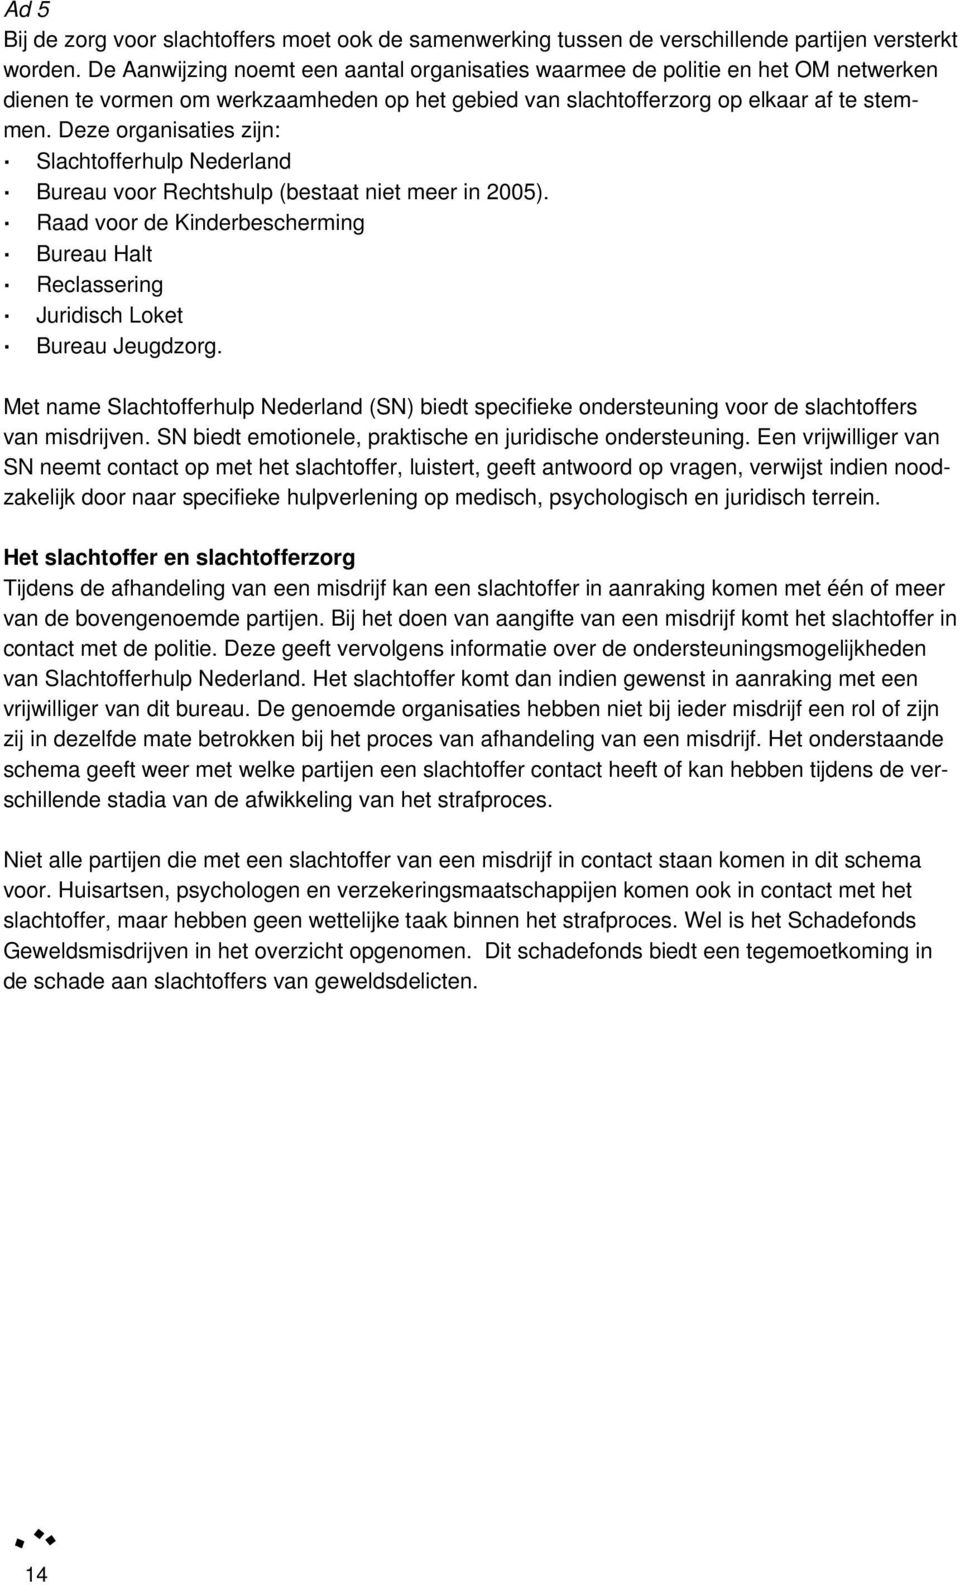 Deze organisaties zijn: Slachtofferhulp Nederland Bureau voor Rechtshulp (bestaat niet meer in 2005). Raad voor de Kinderbescherming Bureau Halt Reclassering Juridisch Loket Bureau Jeugdzorg.